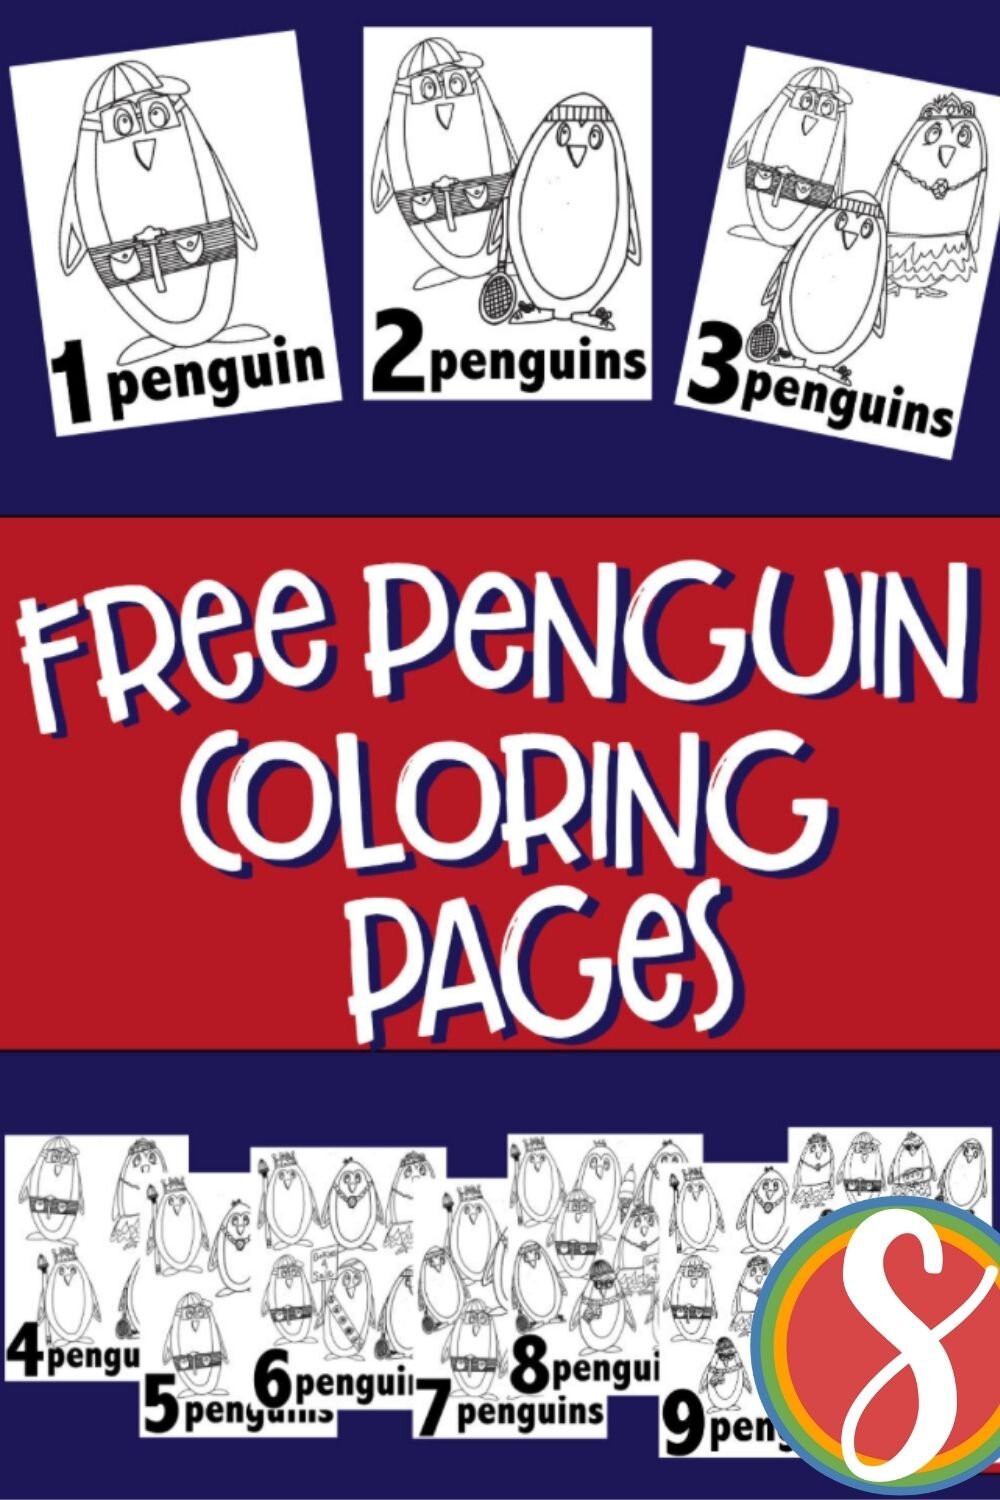 Penguin s coloring pages â stevie doodles